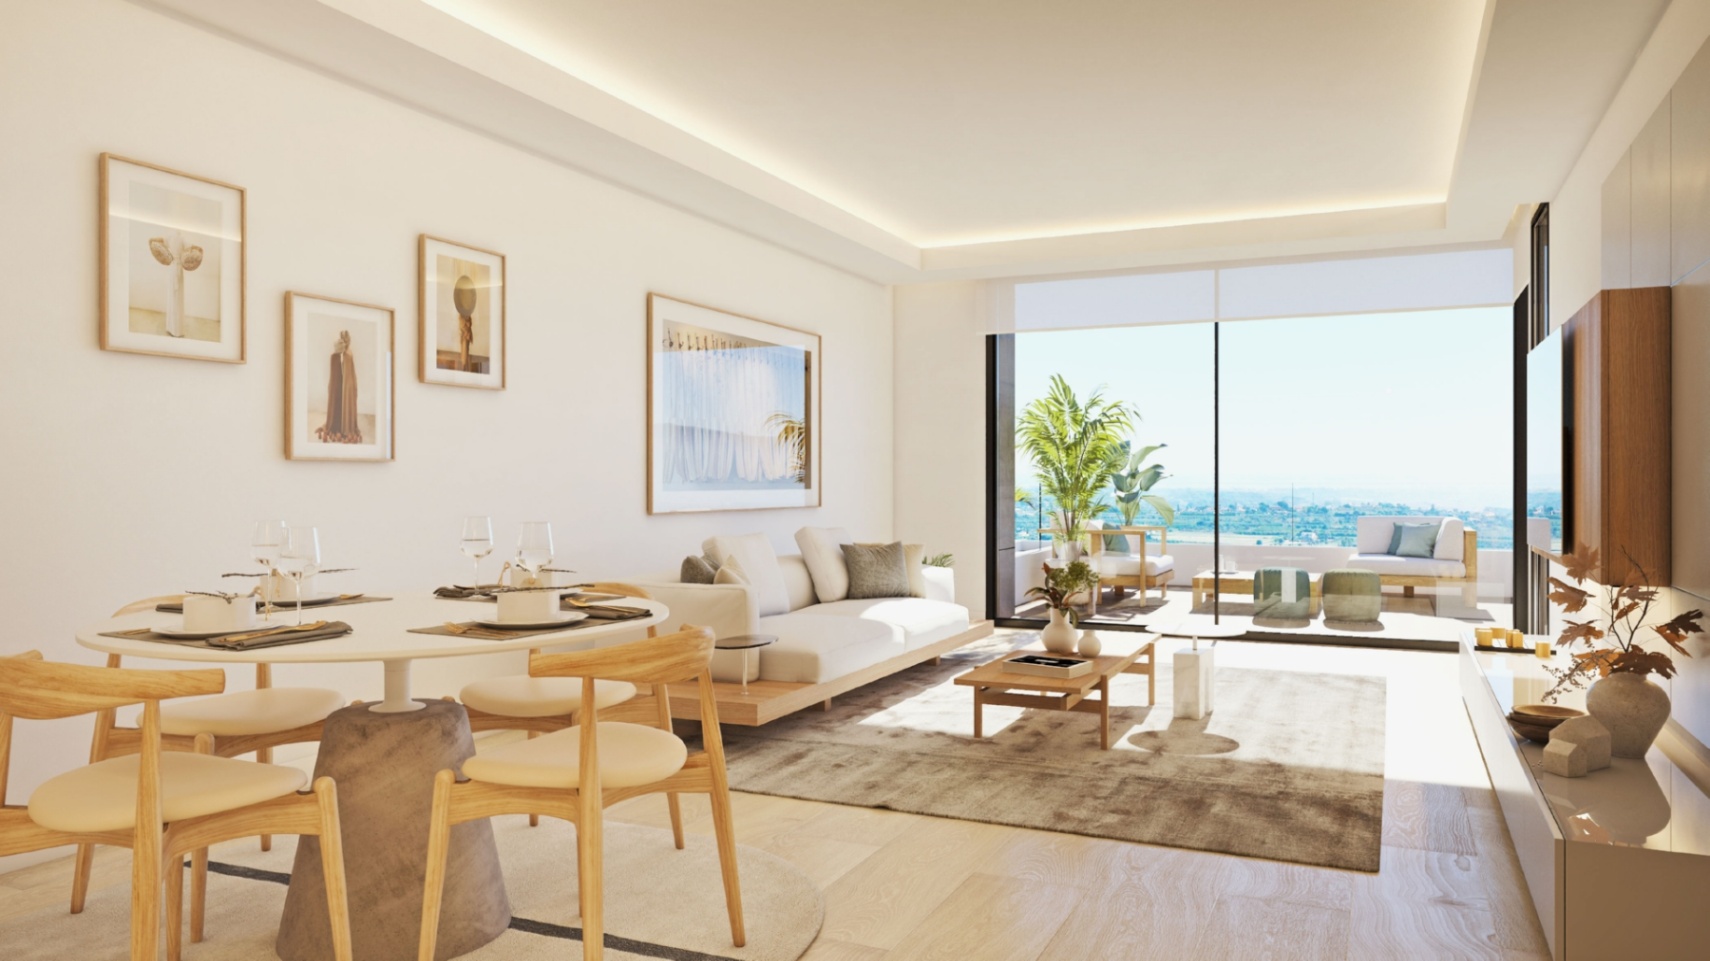 Denia : Bel appartement récemment construit avec une belle vue sur la mer à côté du golf.